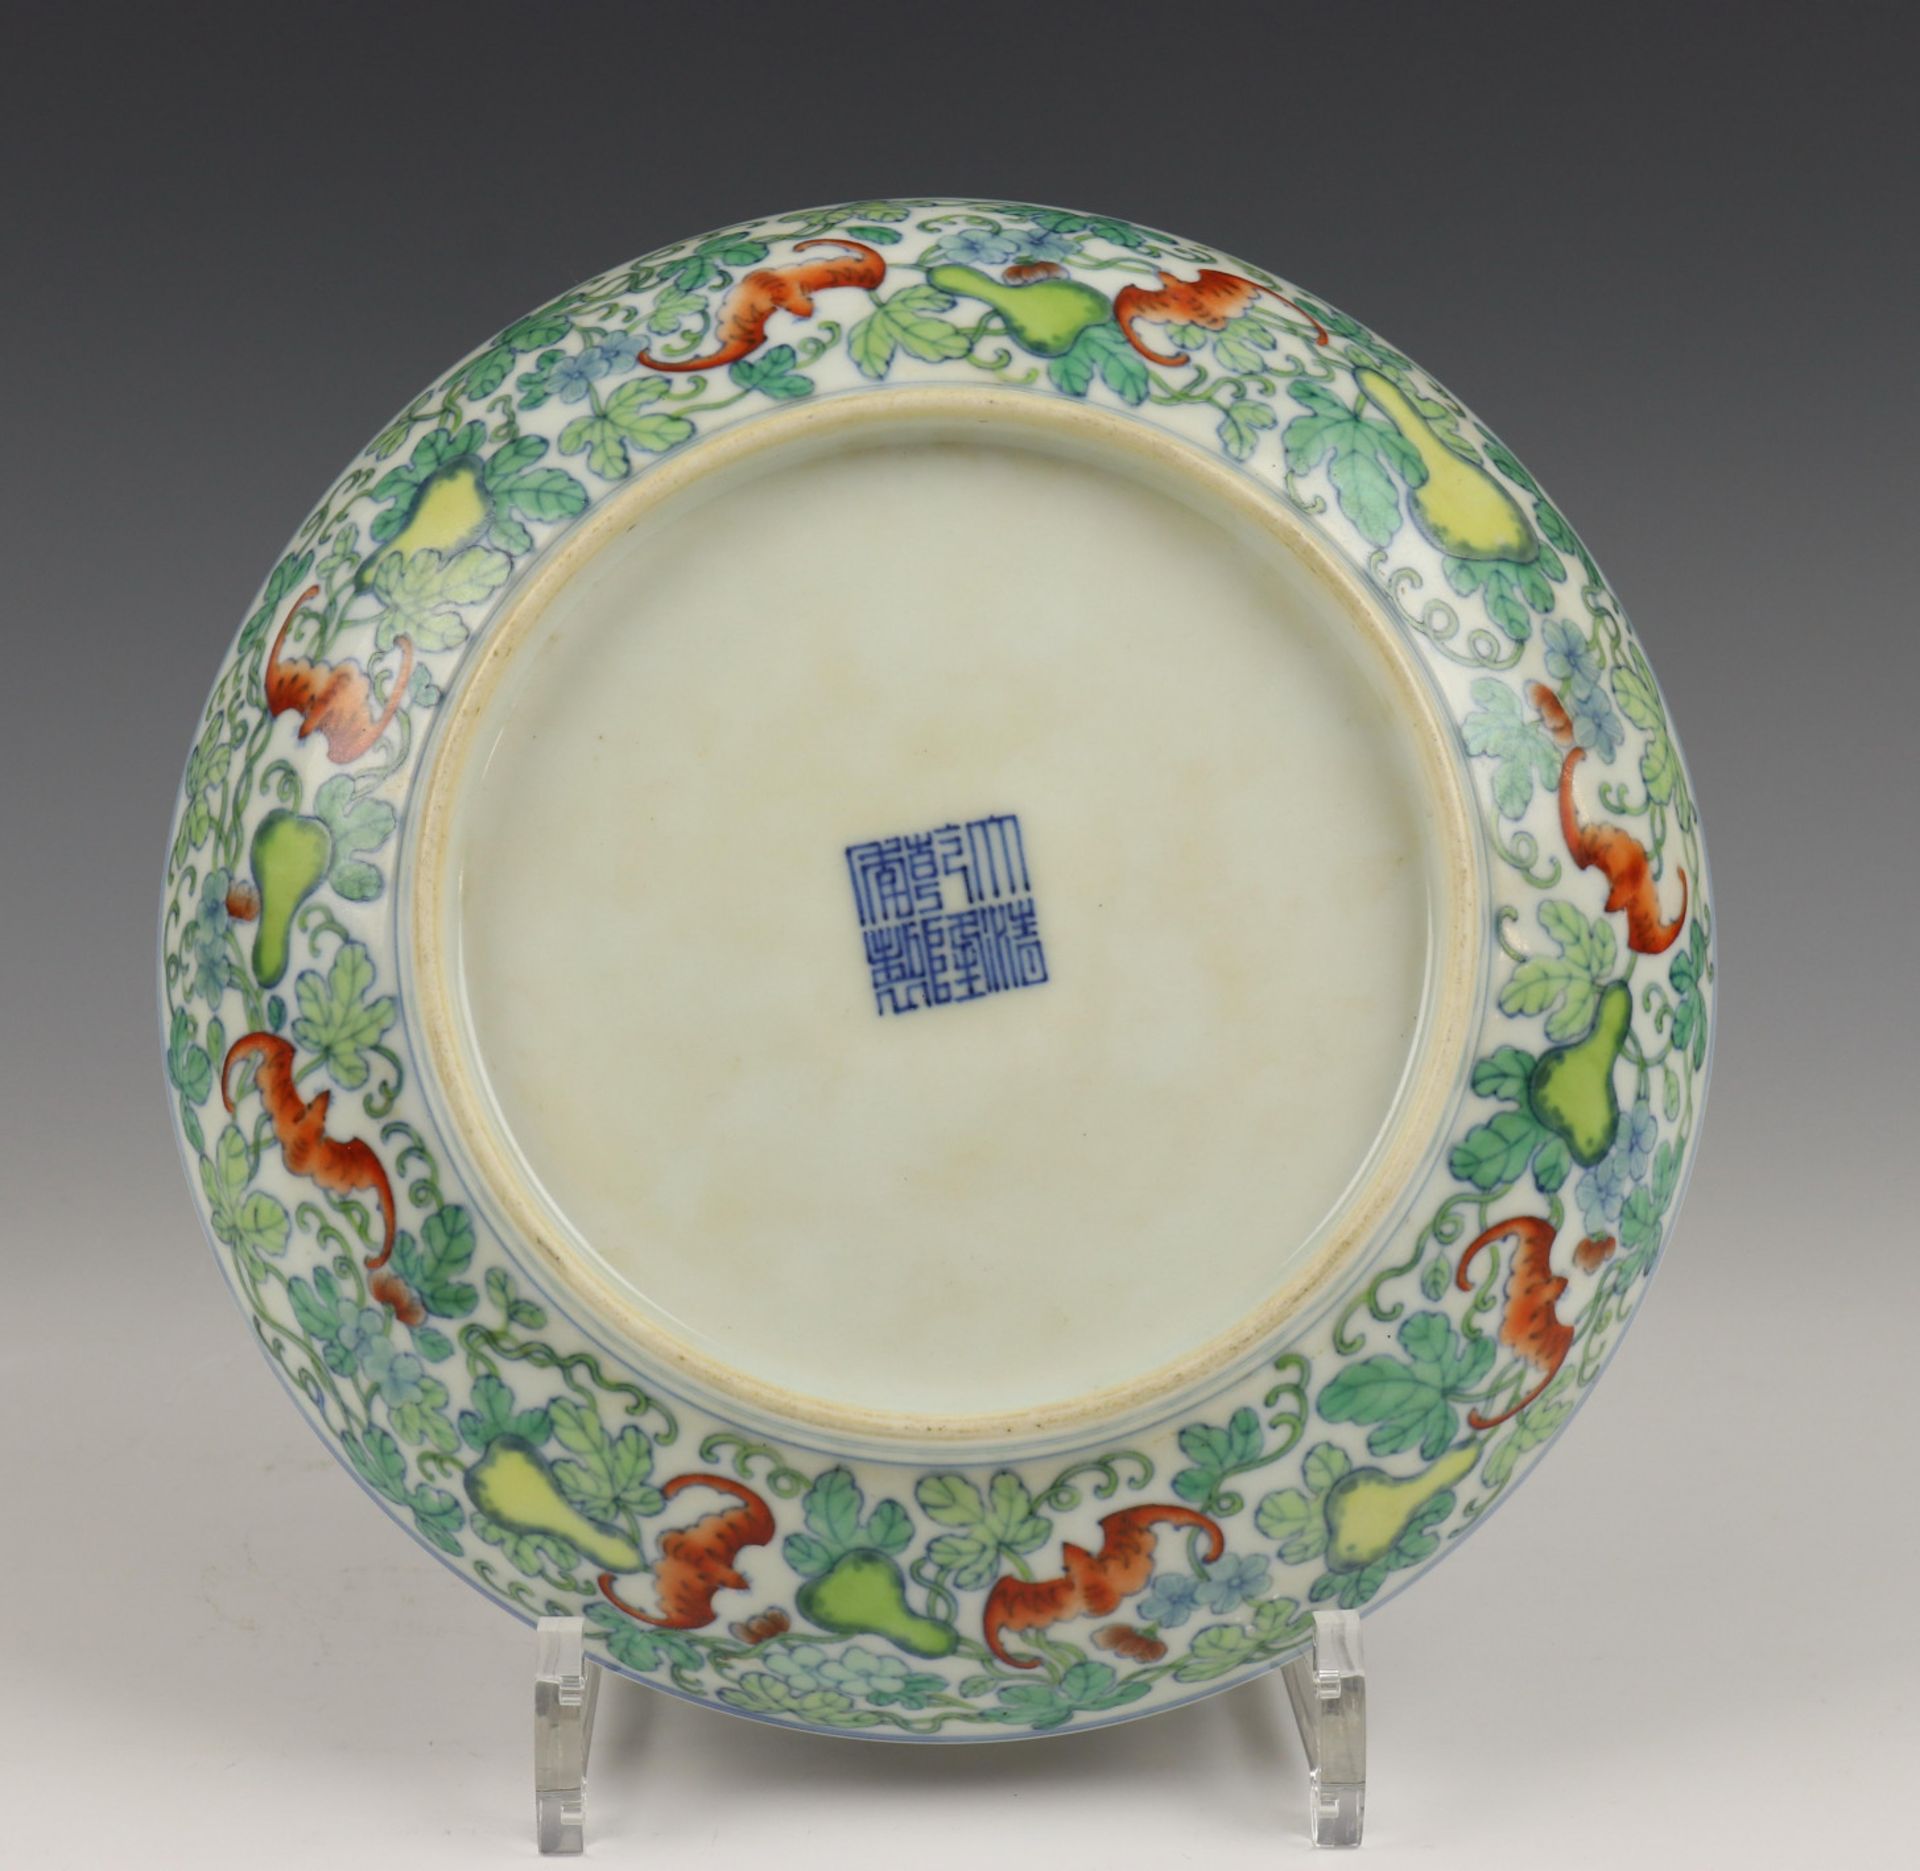 China, doucai porseleinen bord, 20e eeuw, - Image 4 of 4